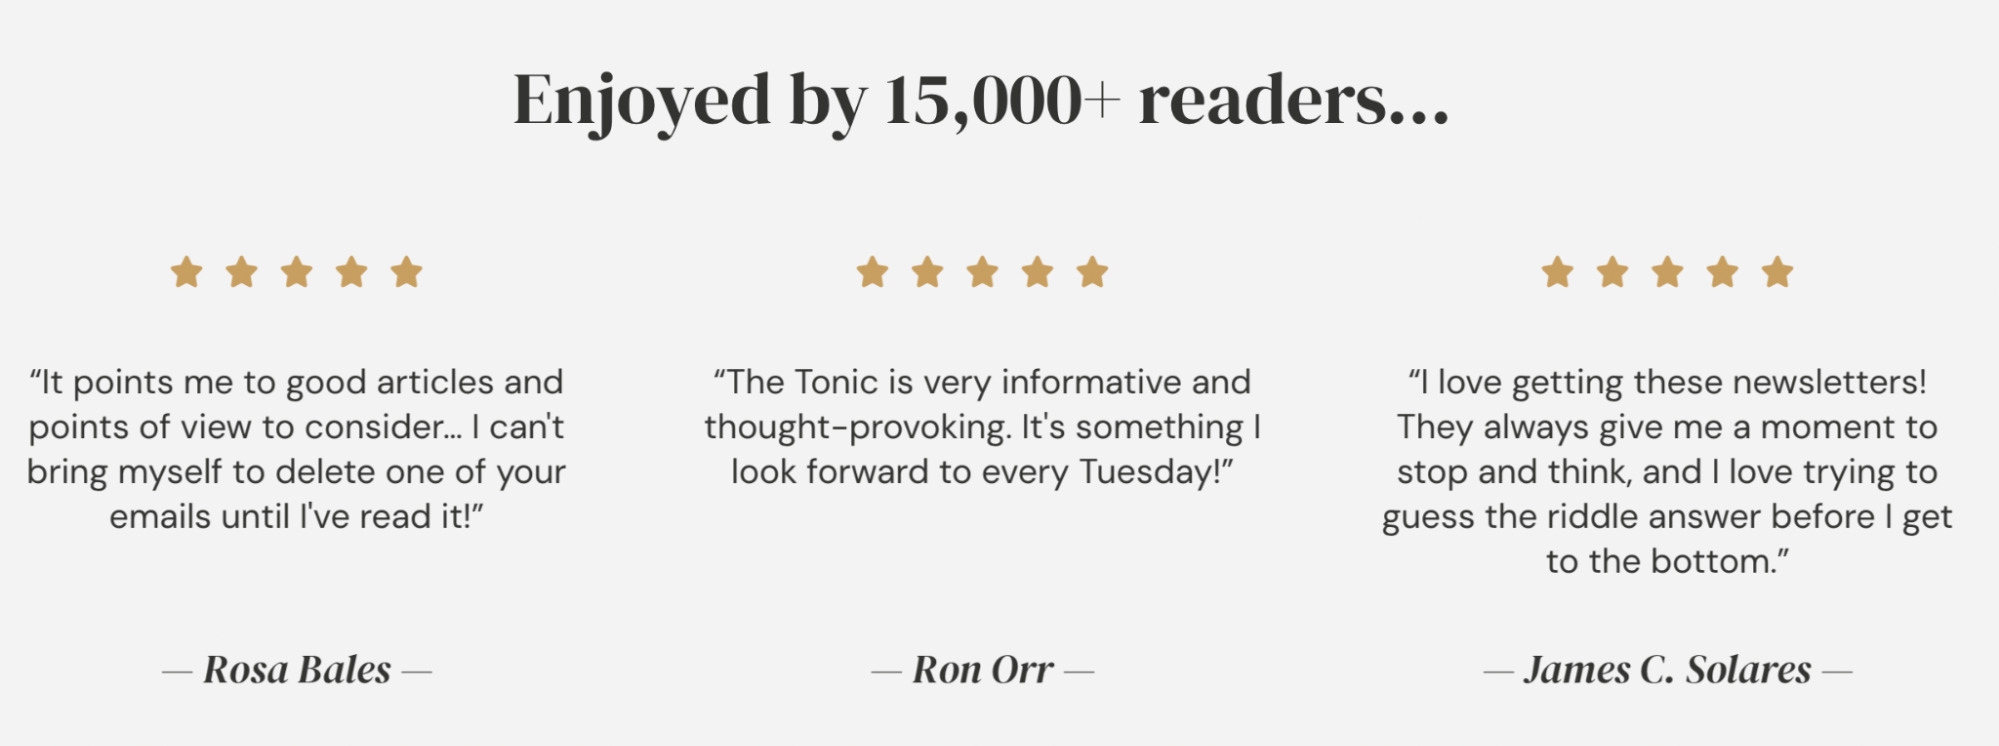 Đánh giá của độc giả The Tonic